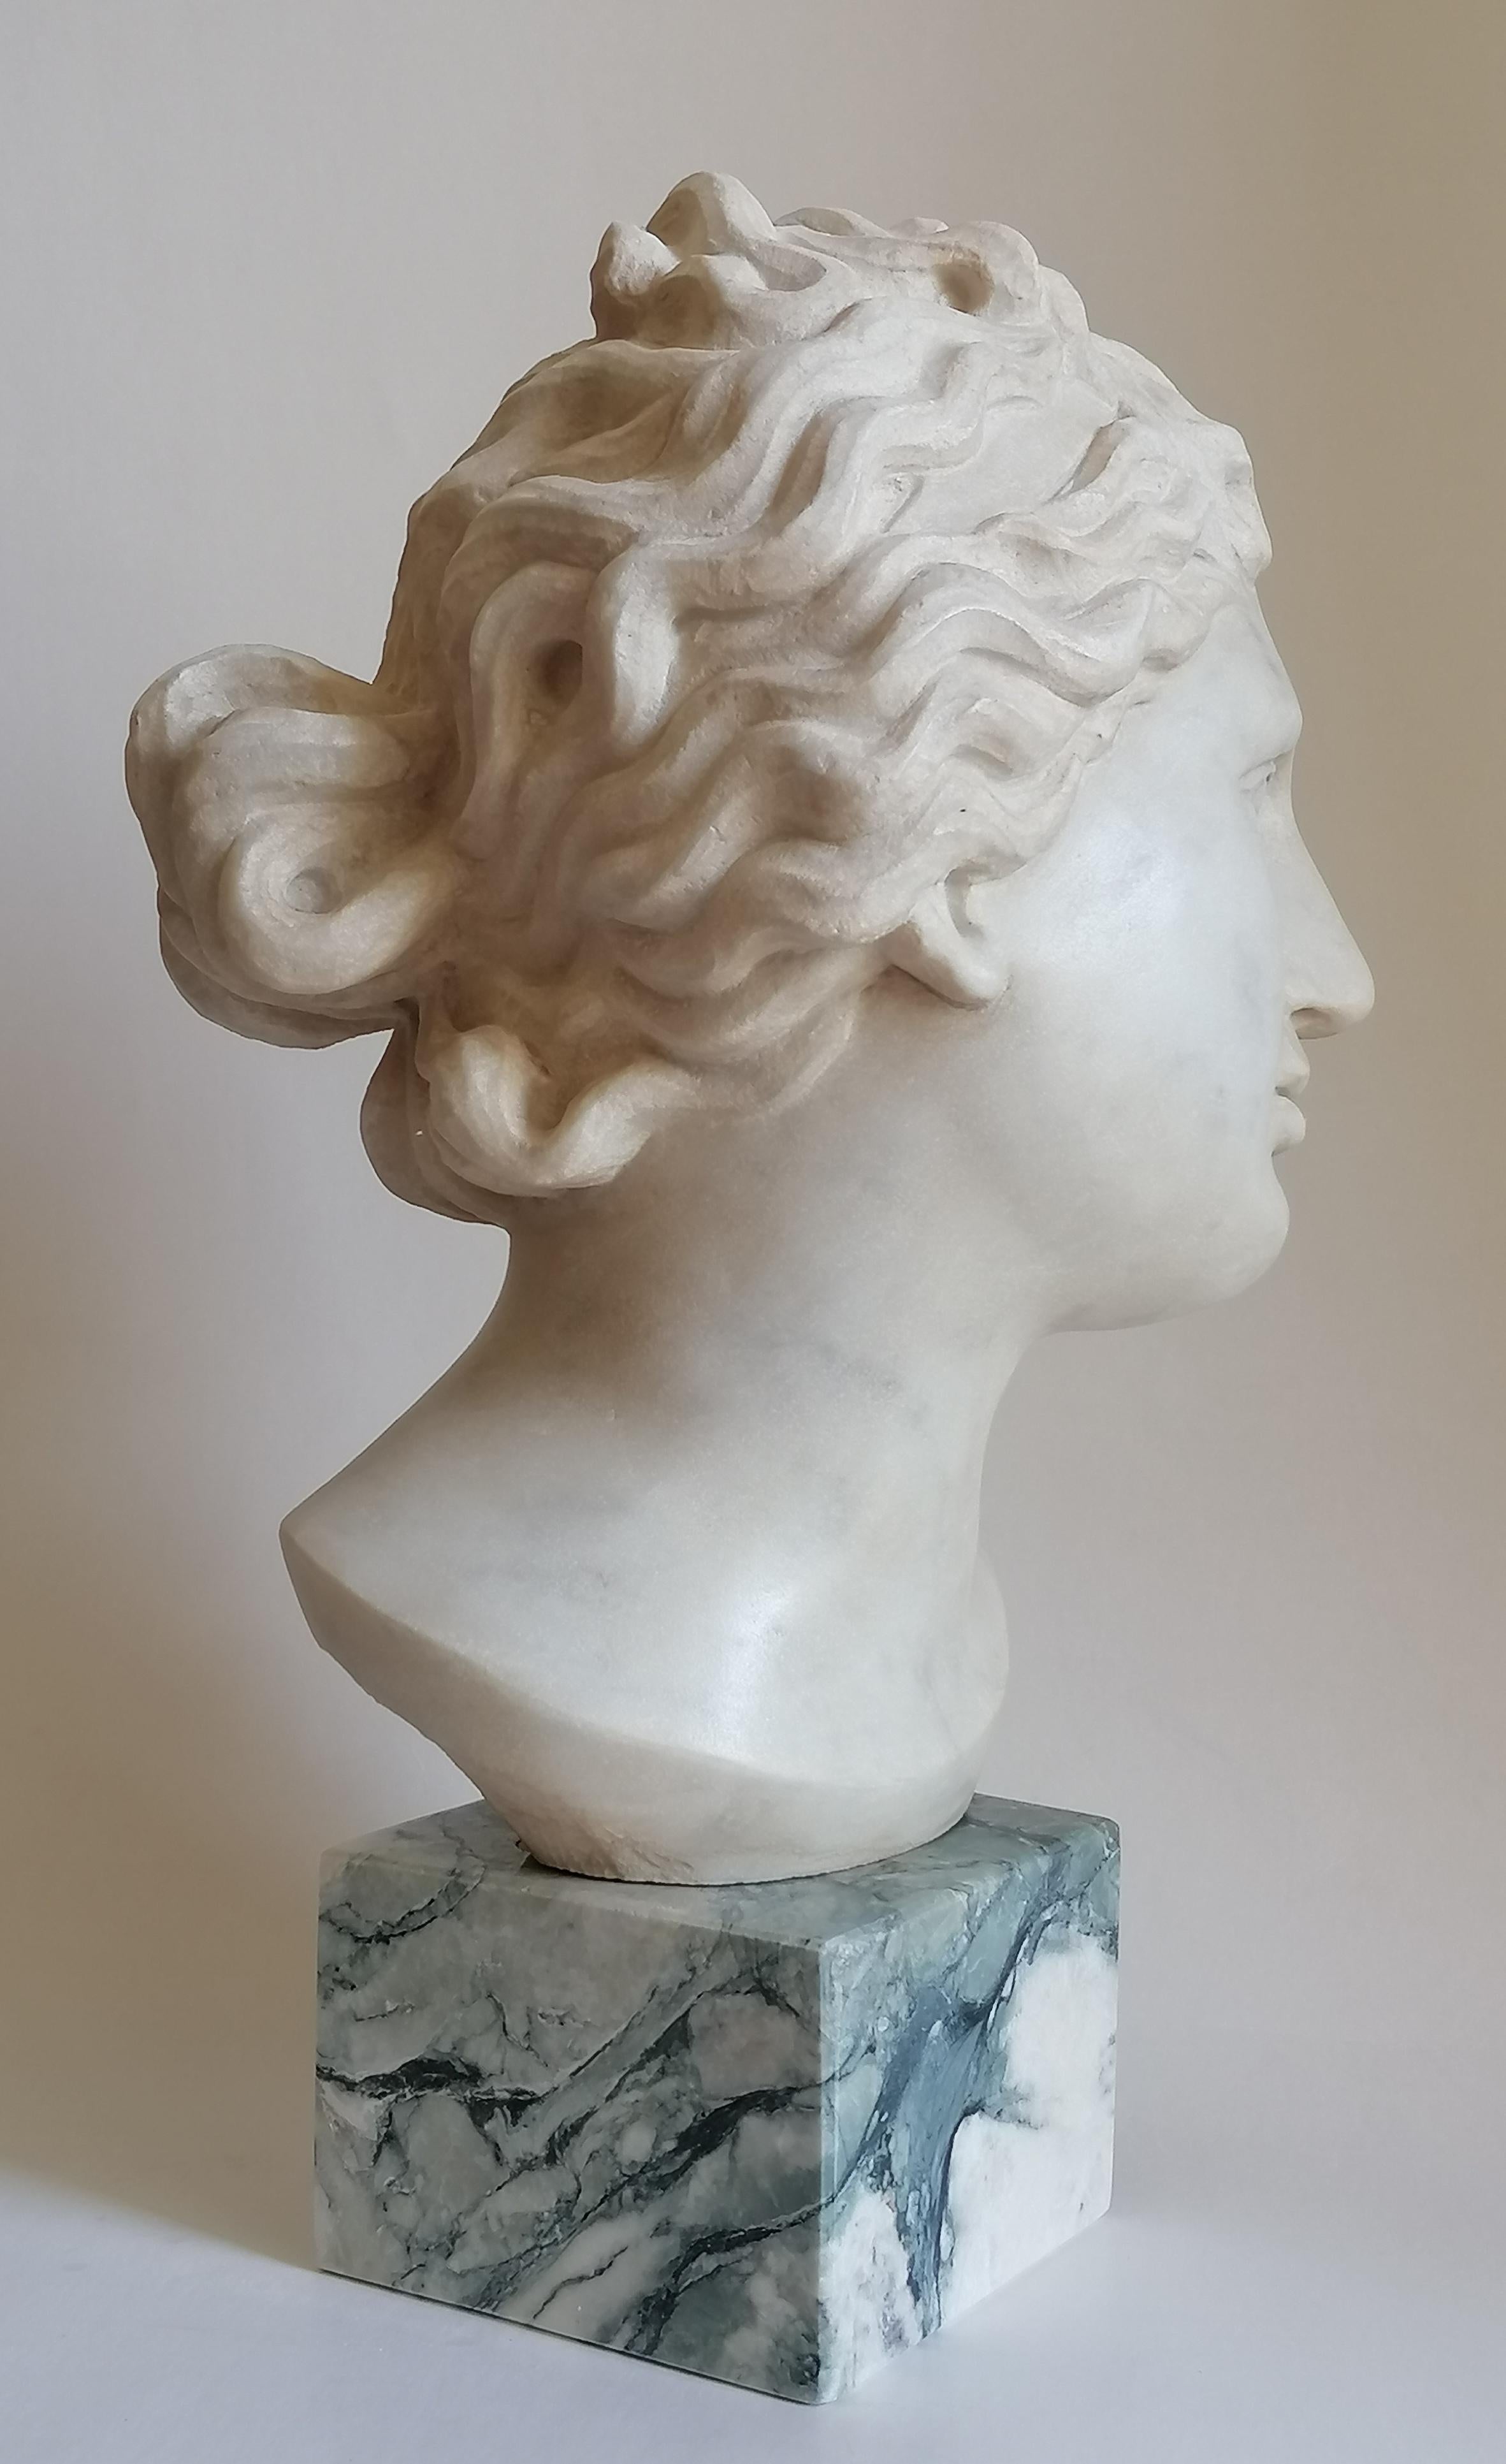 Contemporain Venere Medici -testa scolpita su marmo bianco di Carrara - fabriqué en Italie en vente